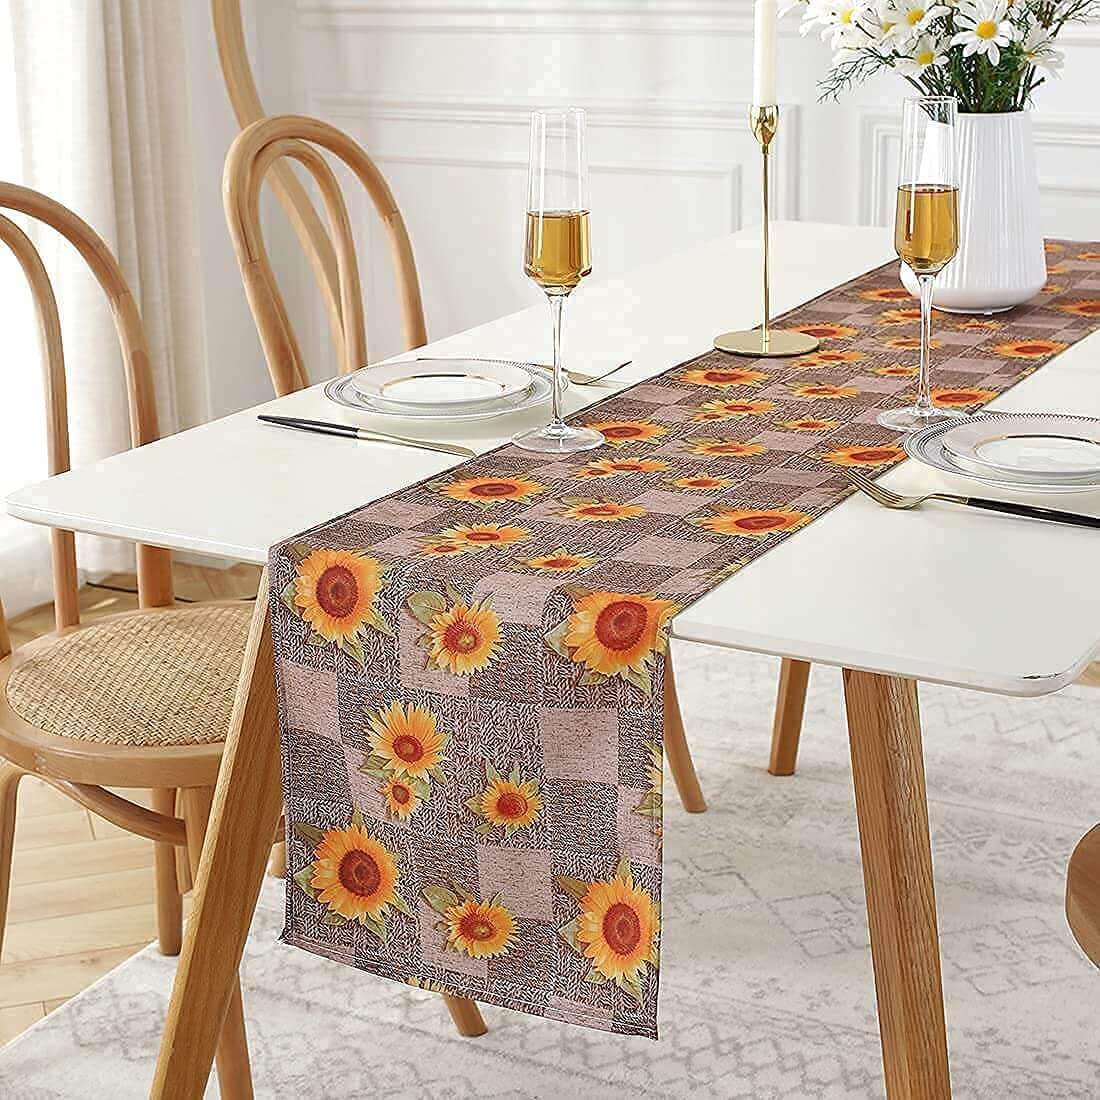 SASTYBALE 14”x108” Sunflower Table Runner